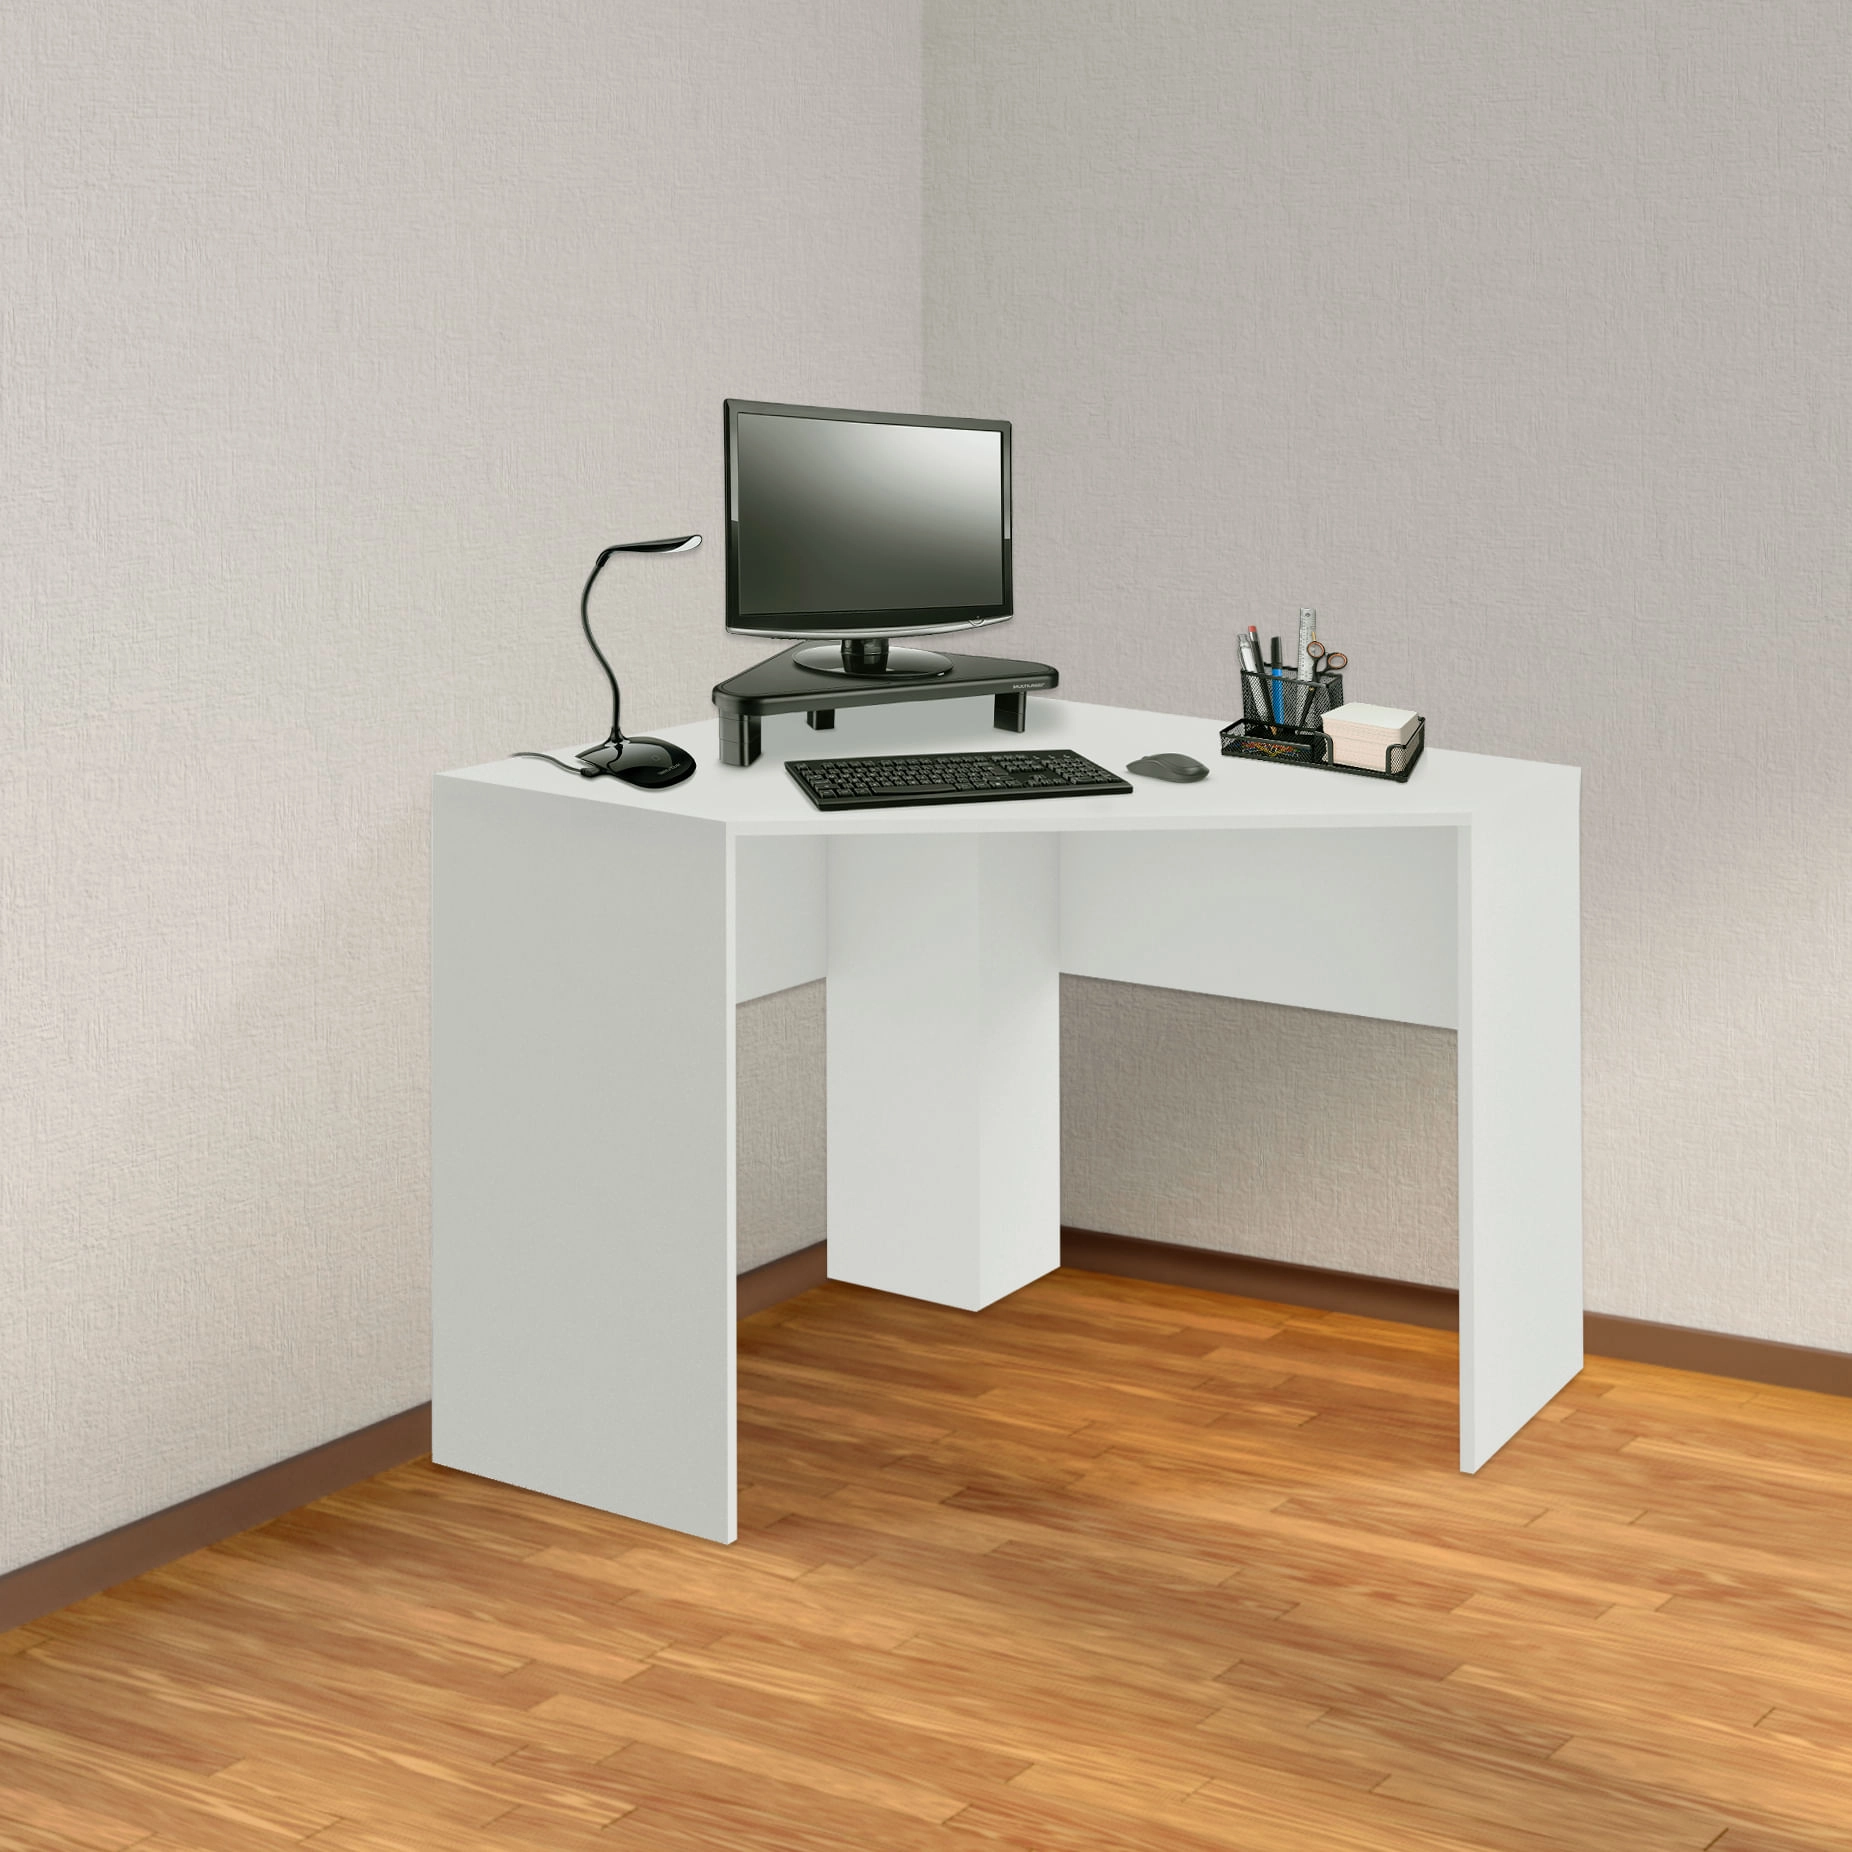 Mesa de Canto para Computador 90x90cm Branco Fosco - EI076 EI076